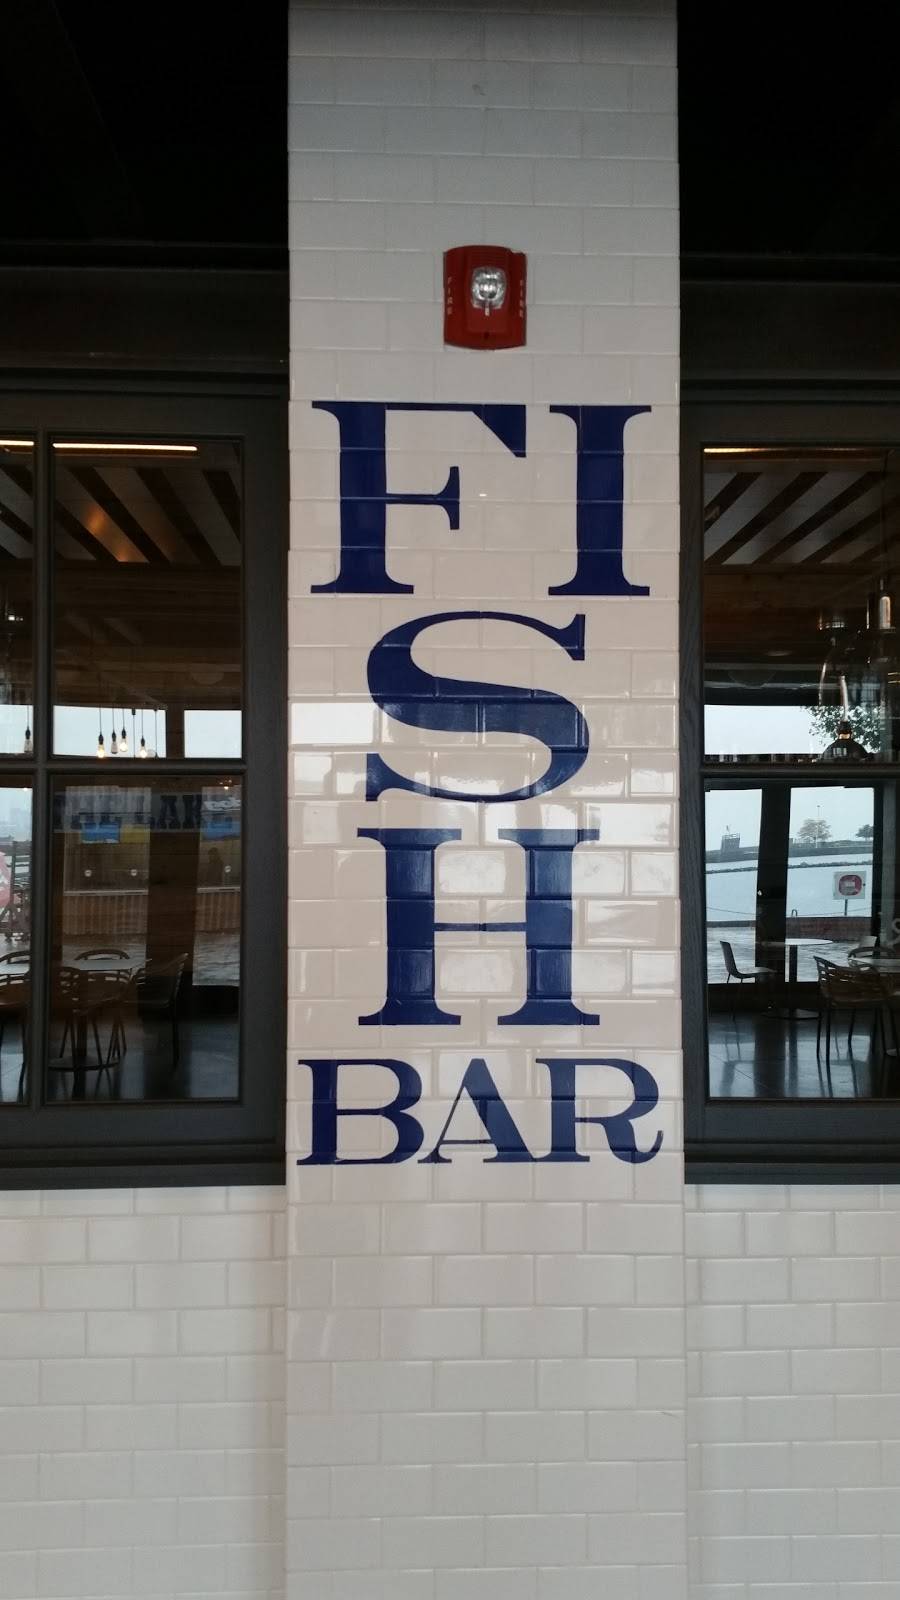 Fish Bar | restaurant | 600 E Grand Ave, Chicago, IL 60611, USA | 3126248017 OR +1 312-624-8017